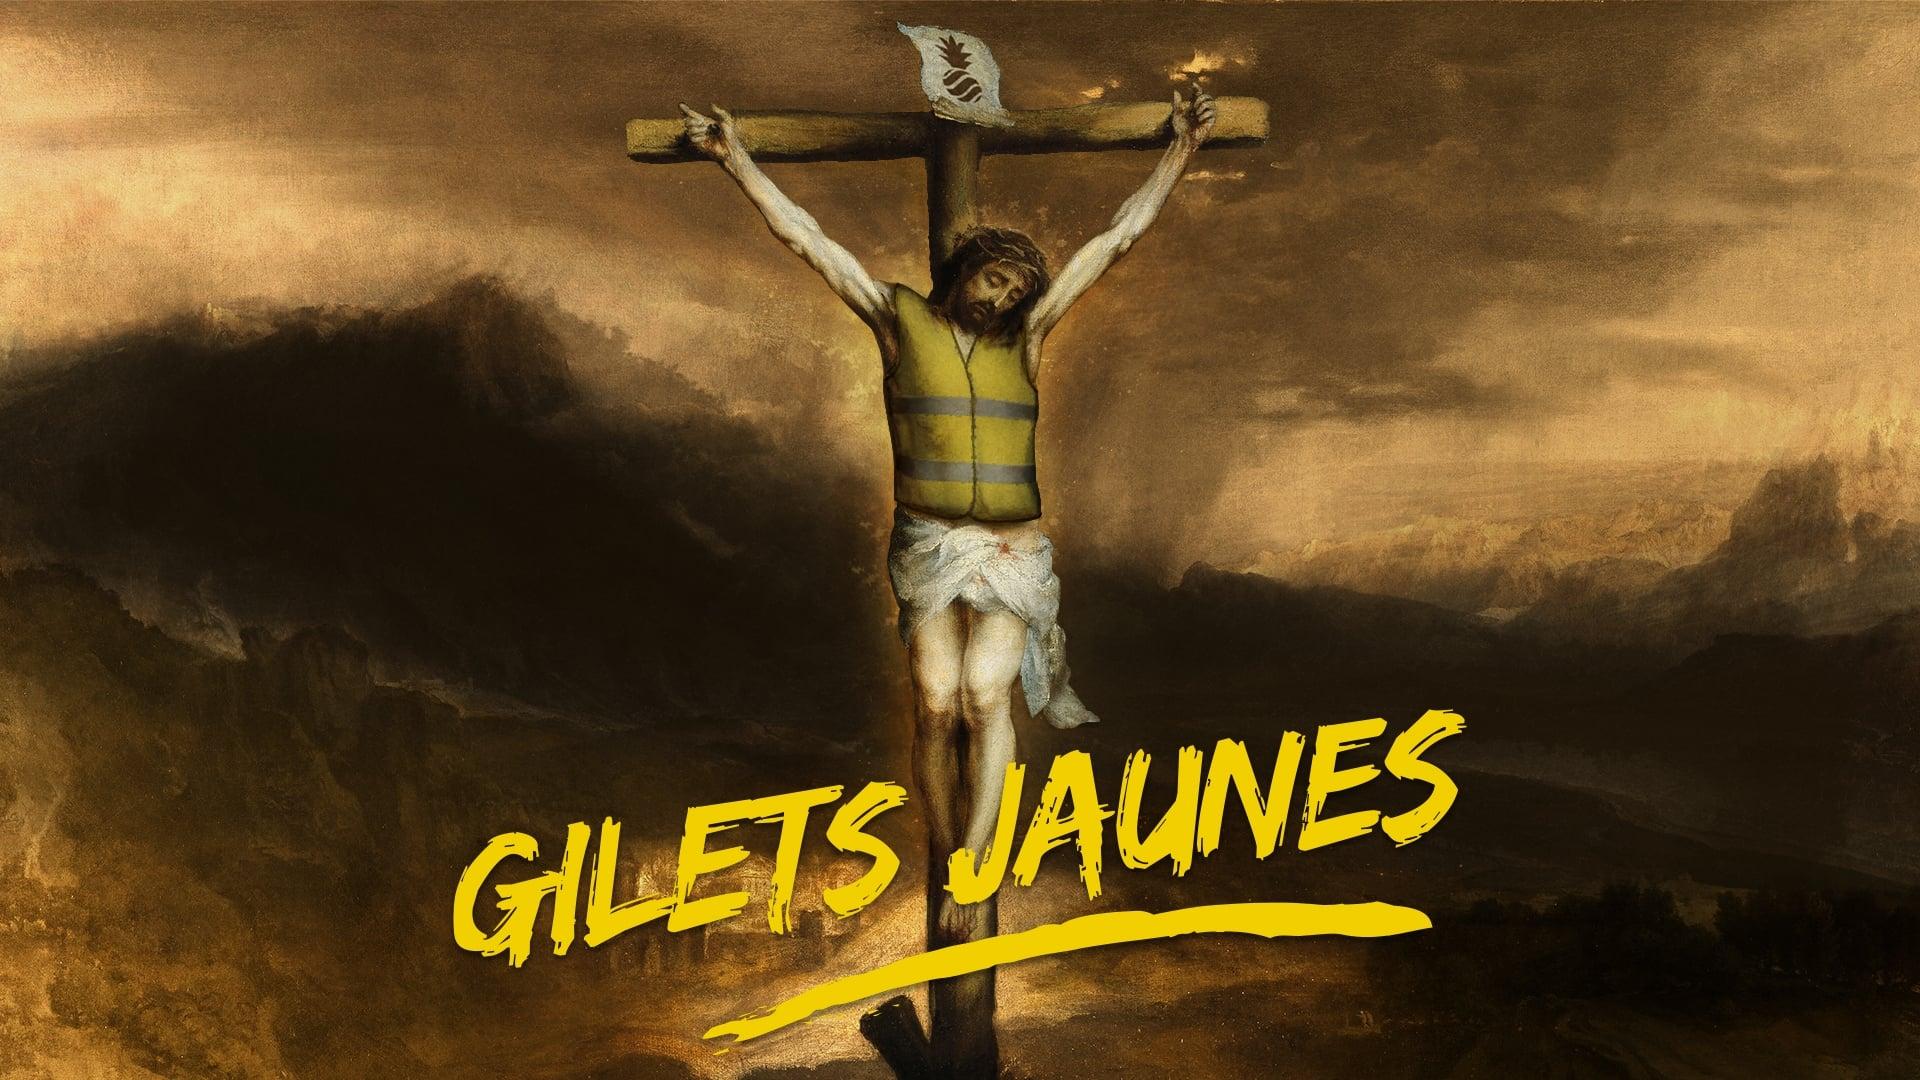 Dieudonné - Gilets Jaunes backdrop